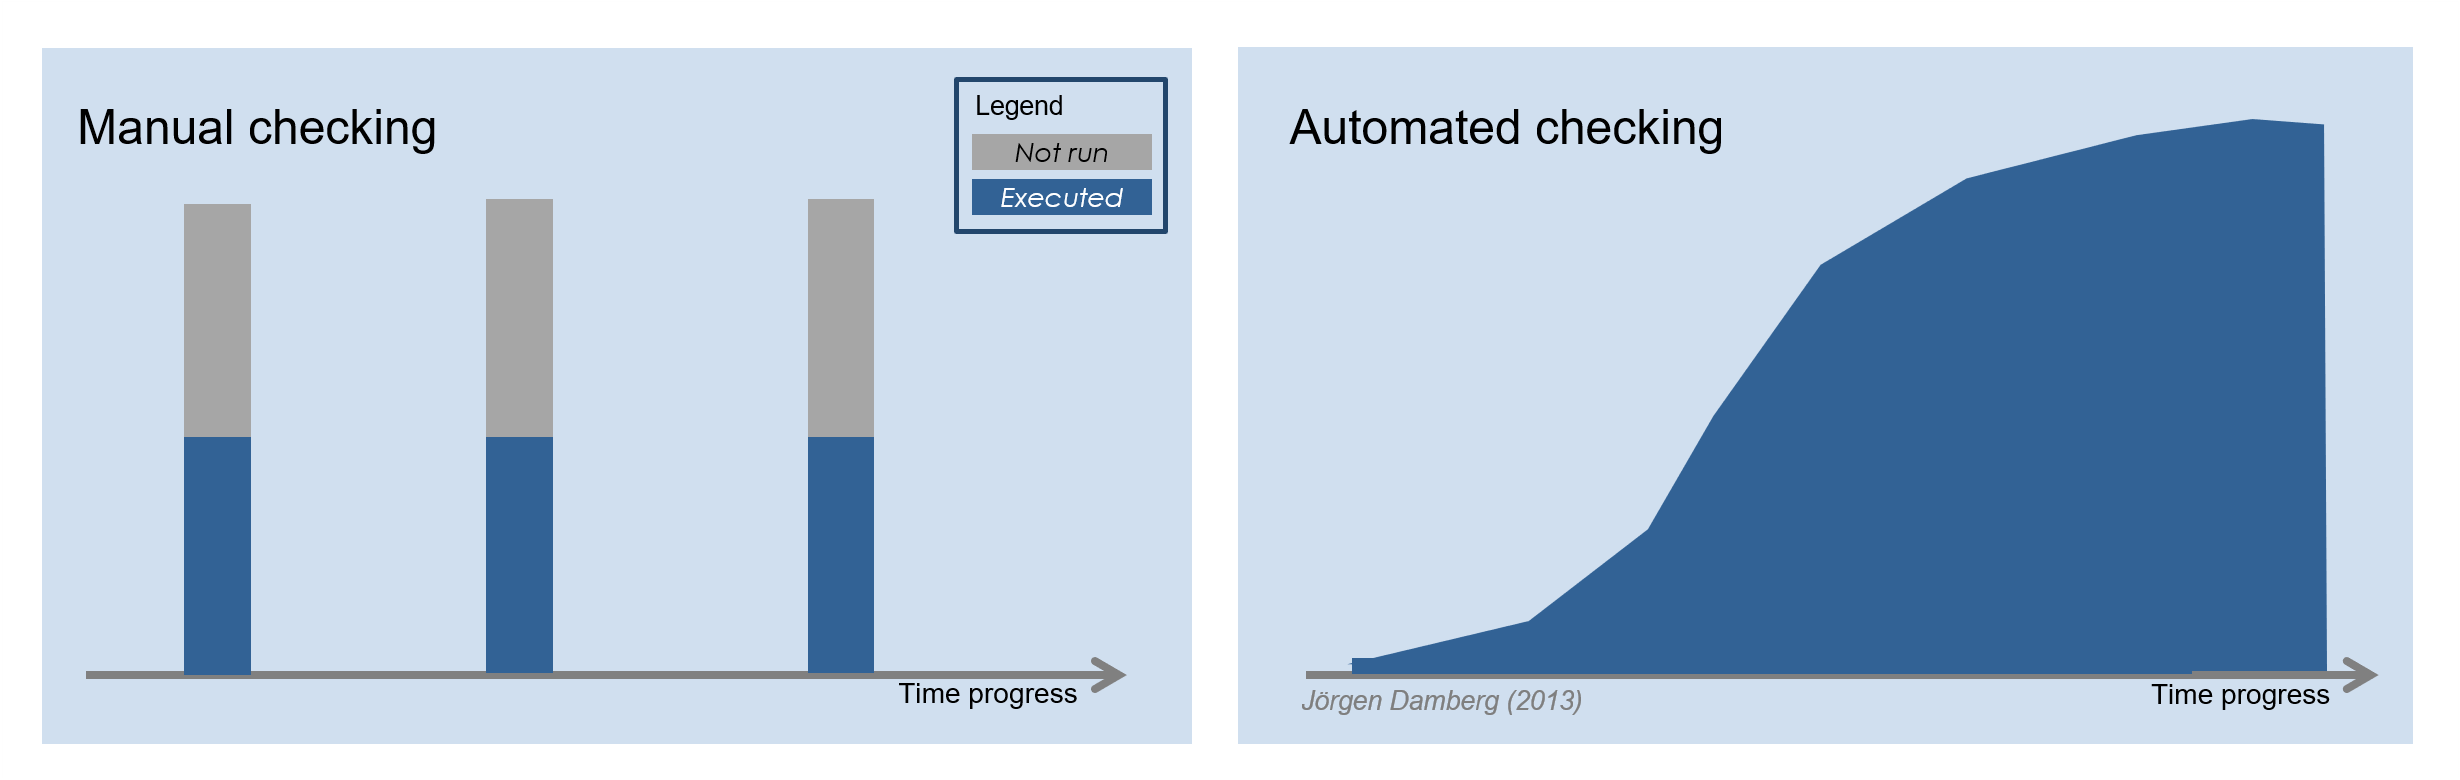 Automation scope comparison